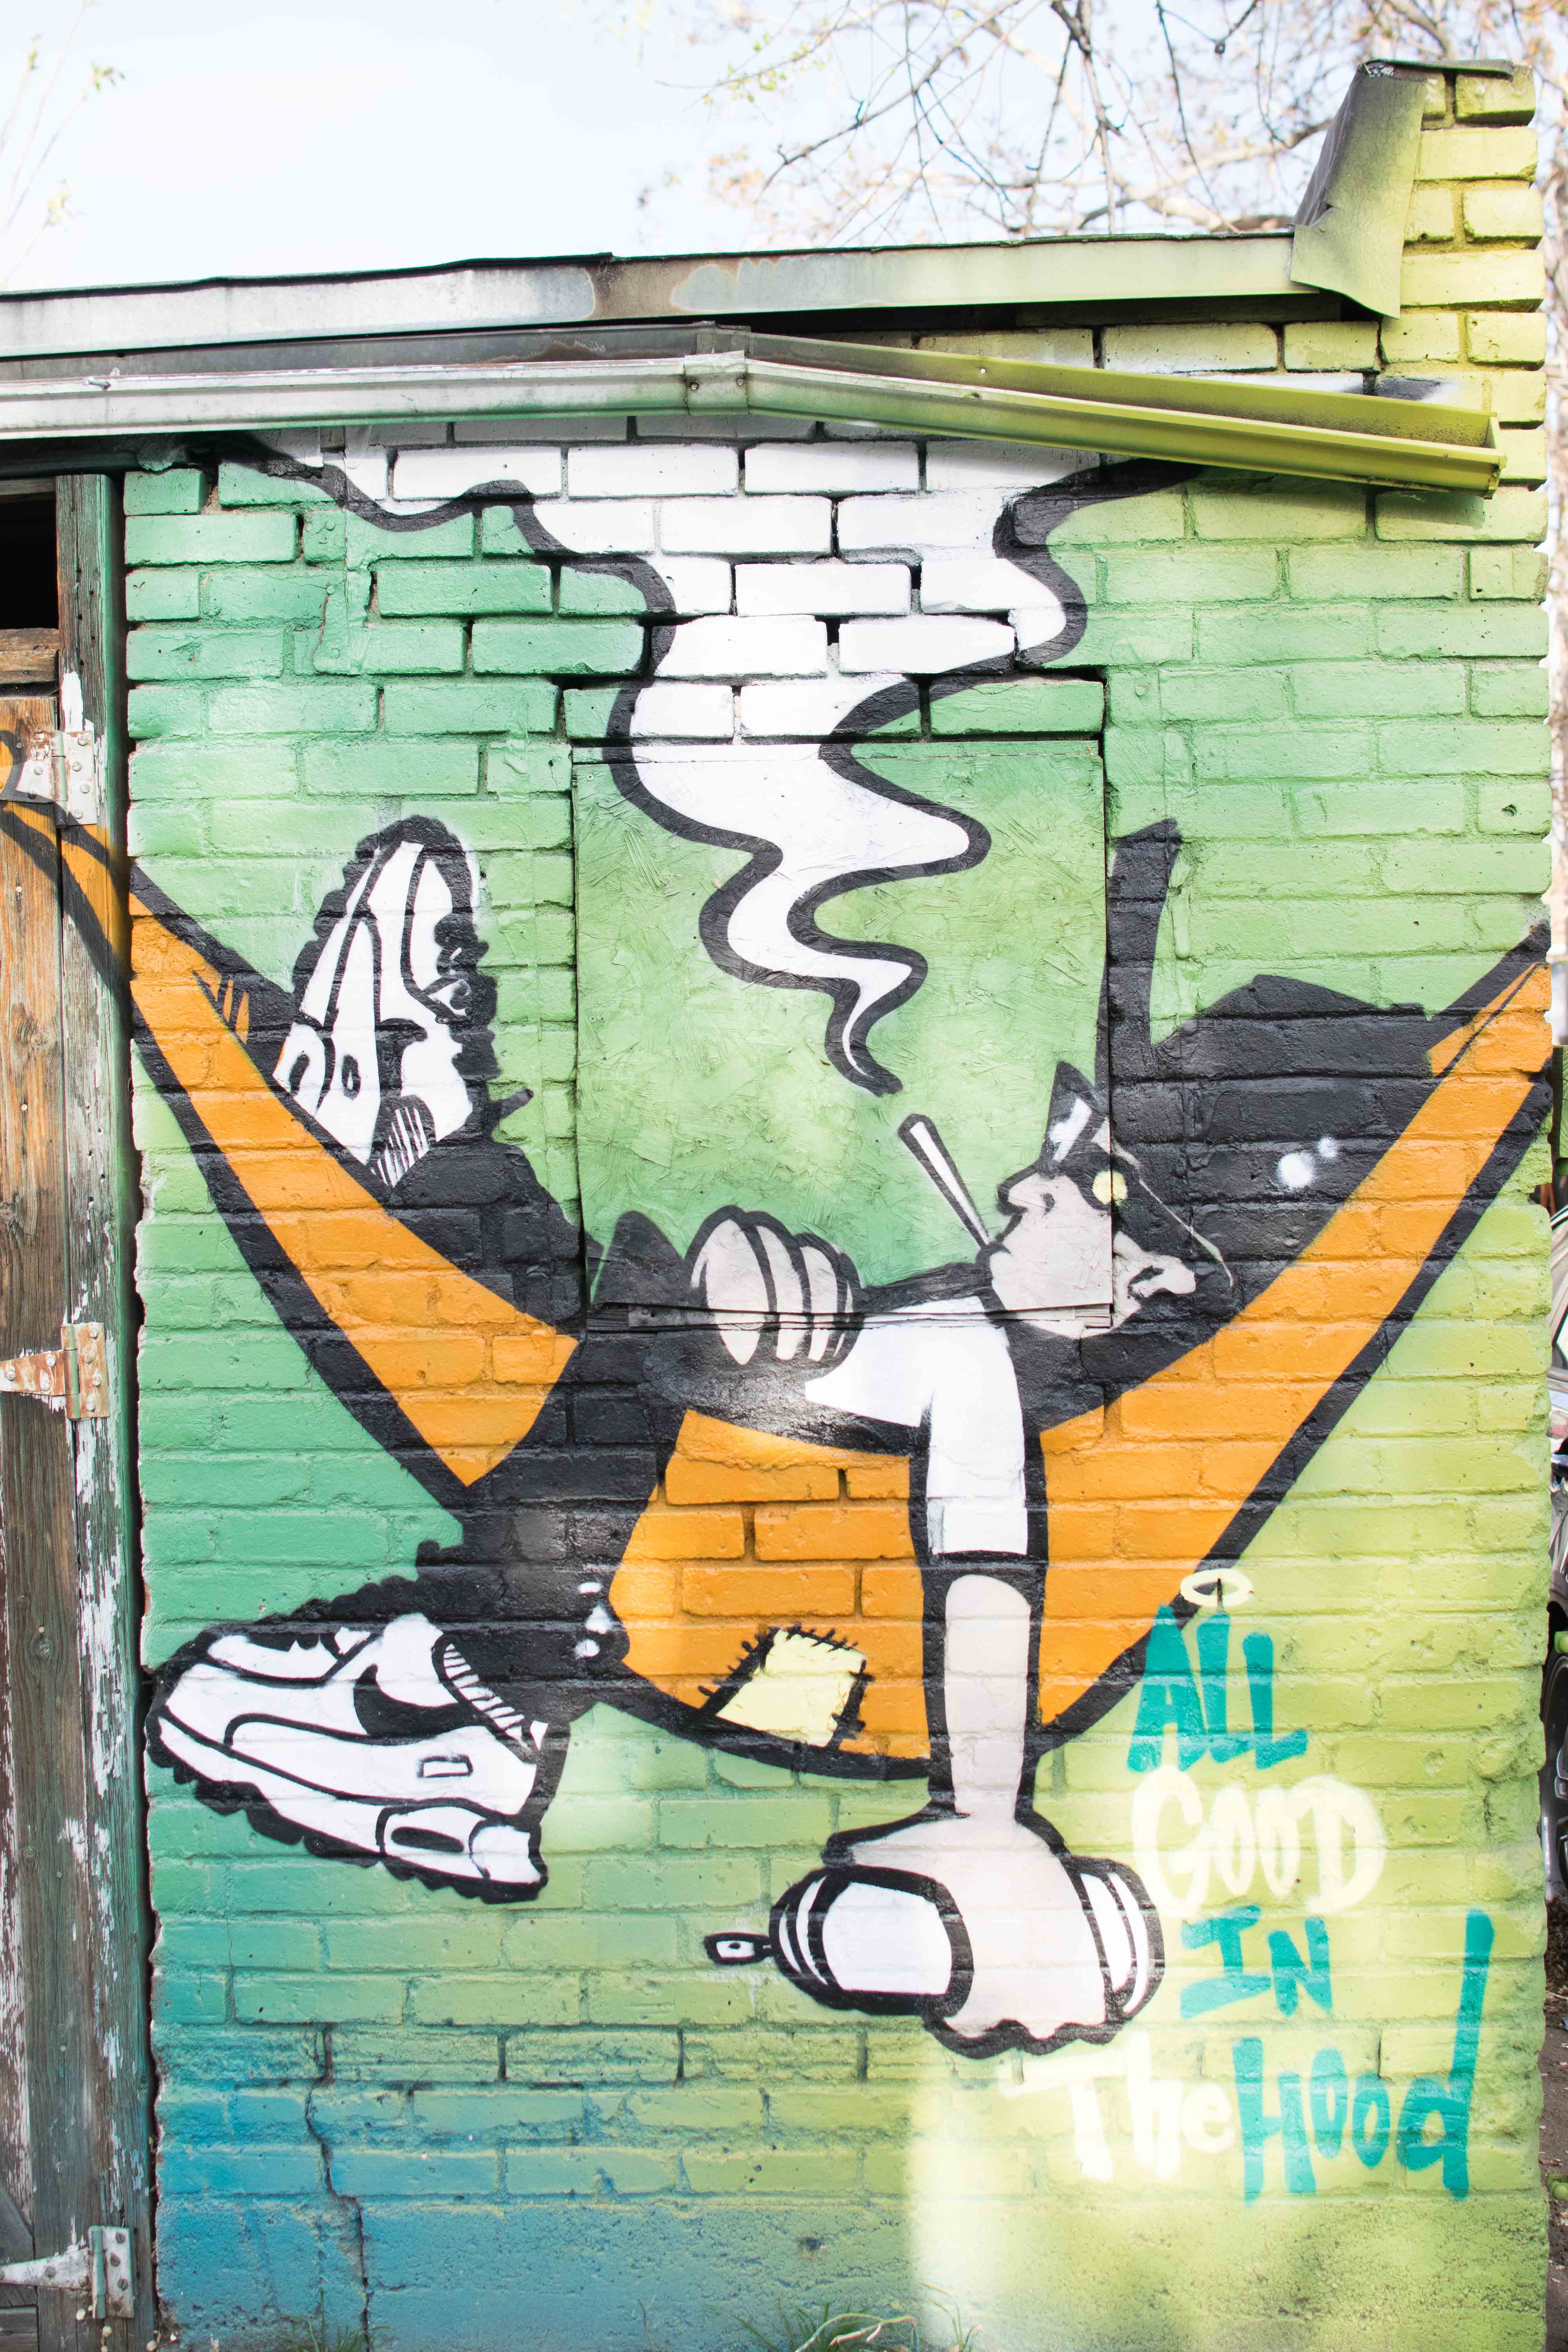 weed graffiti art